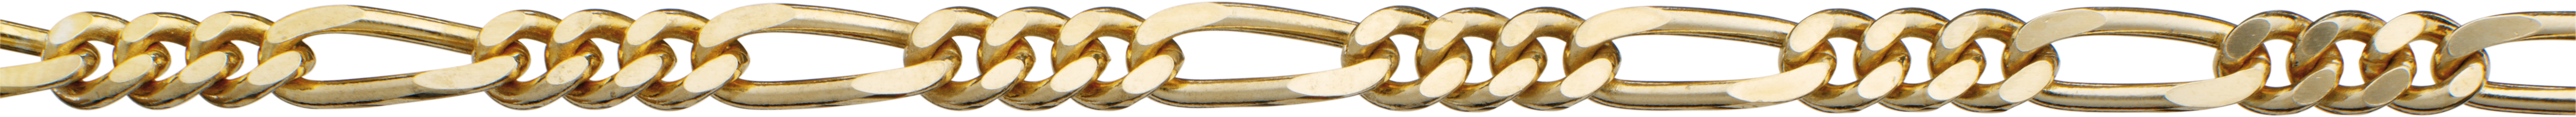 figaro ketting goud 585/-gg 4,00mm, draad dikte 1,20mm